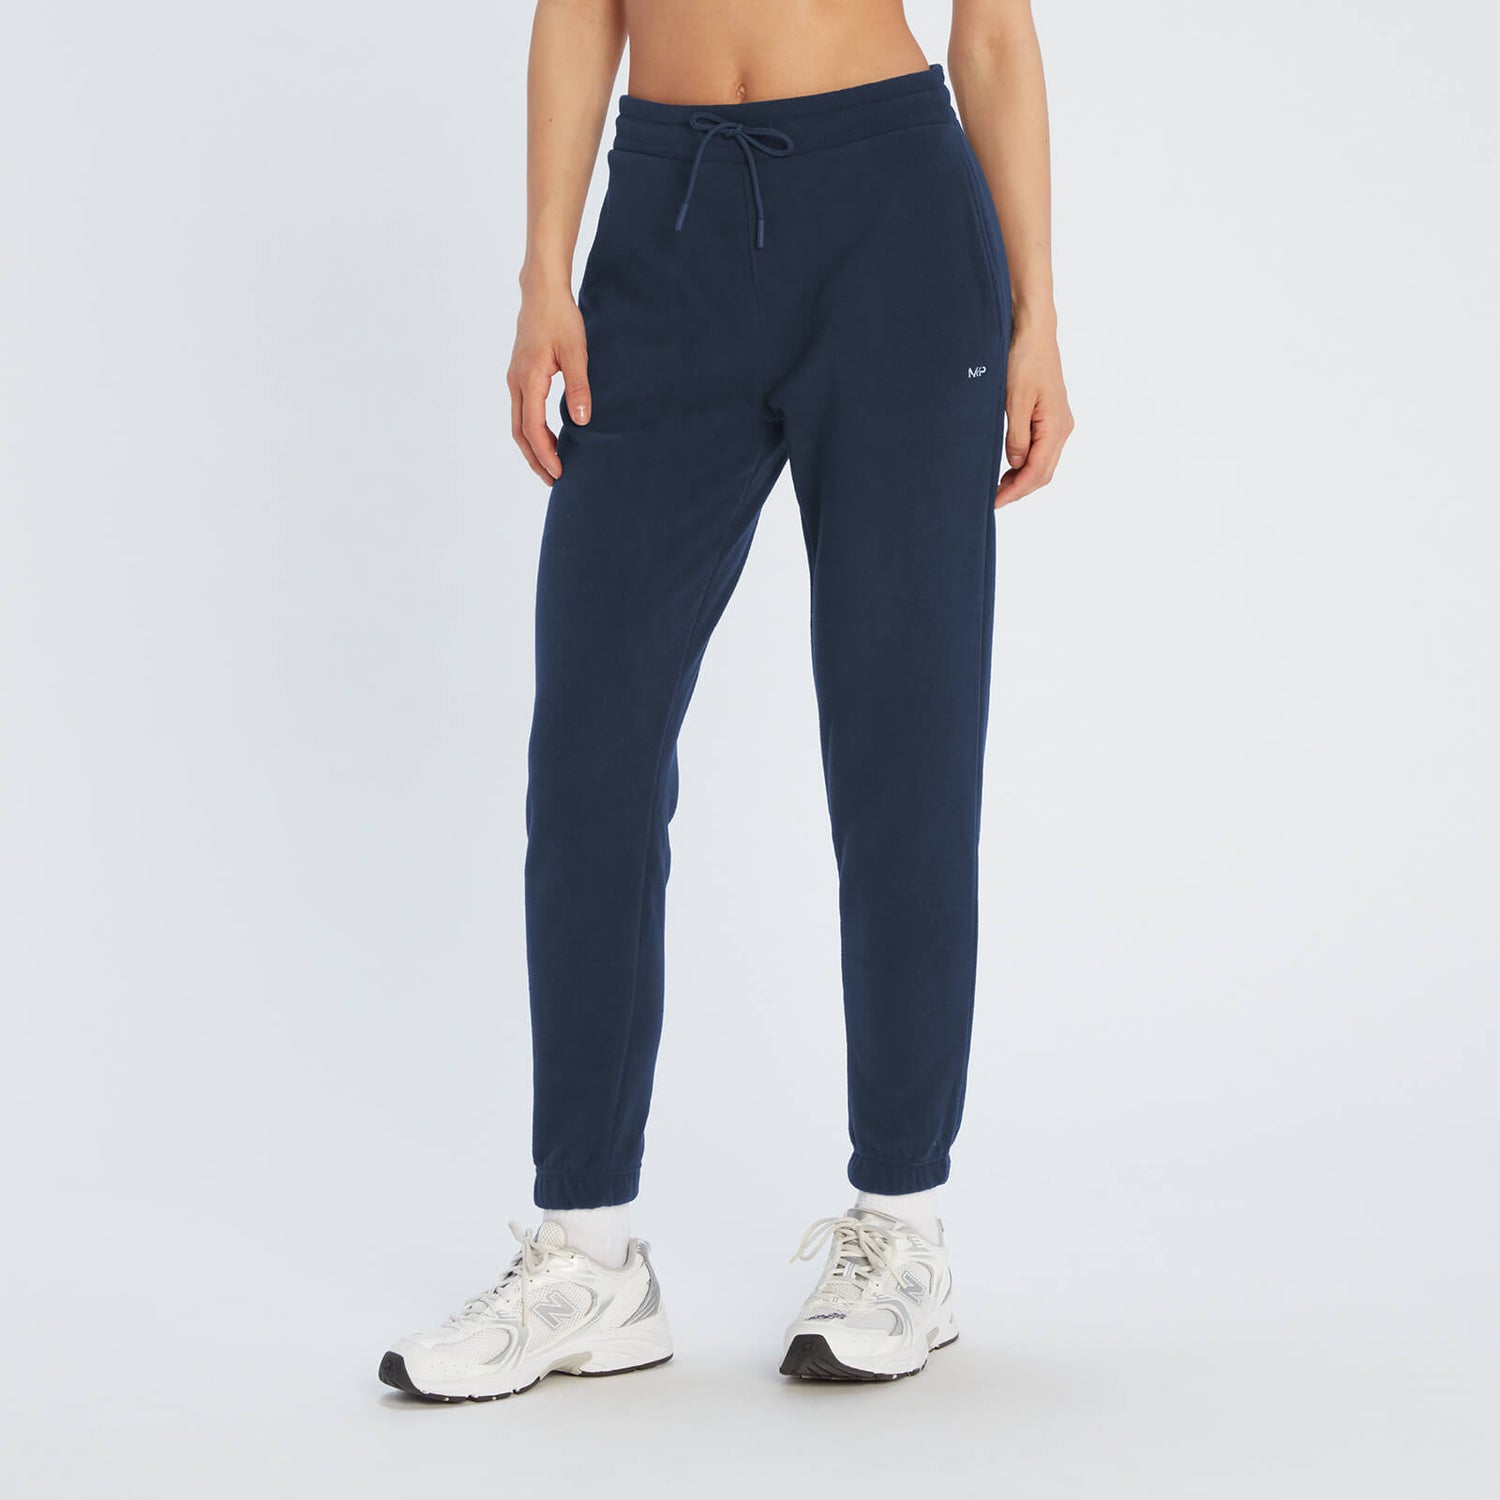 Pantalón deportivo de vellón Essentials para mujer de MP - Azul marino